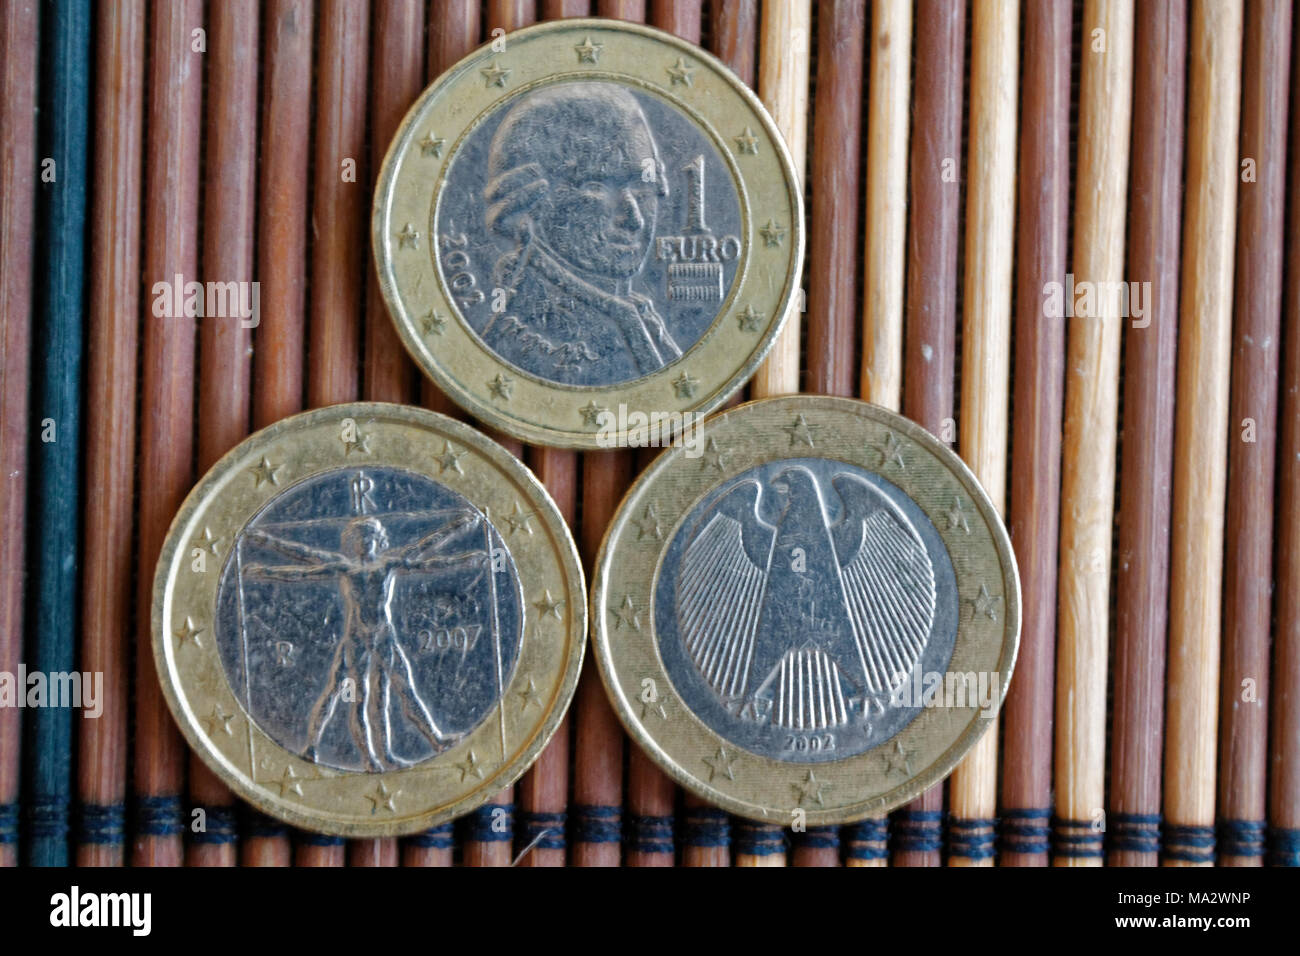 Drei Euro Münzen auf Holz Bambus Tisch liegen in einer Reihe Konfession ist 2 Euro - Rückseite Stockfoto